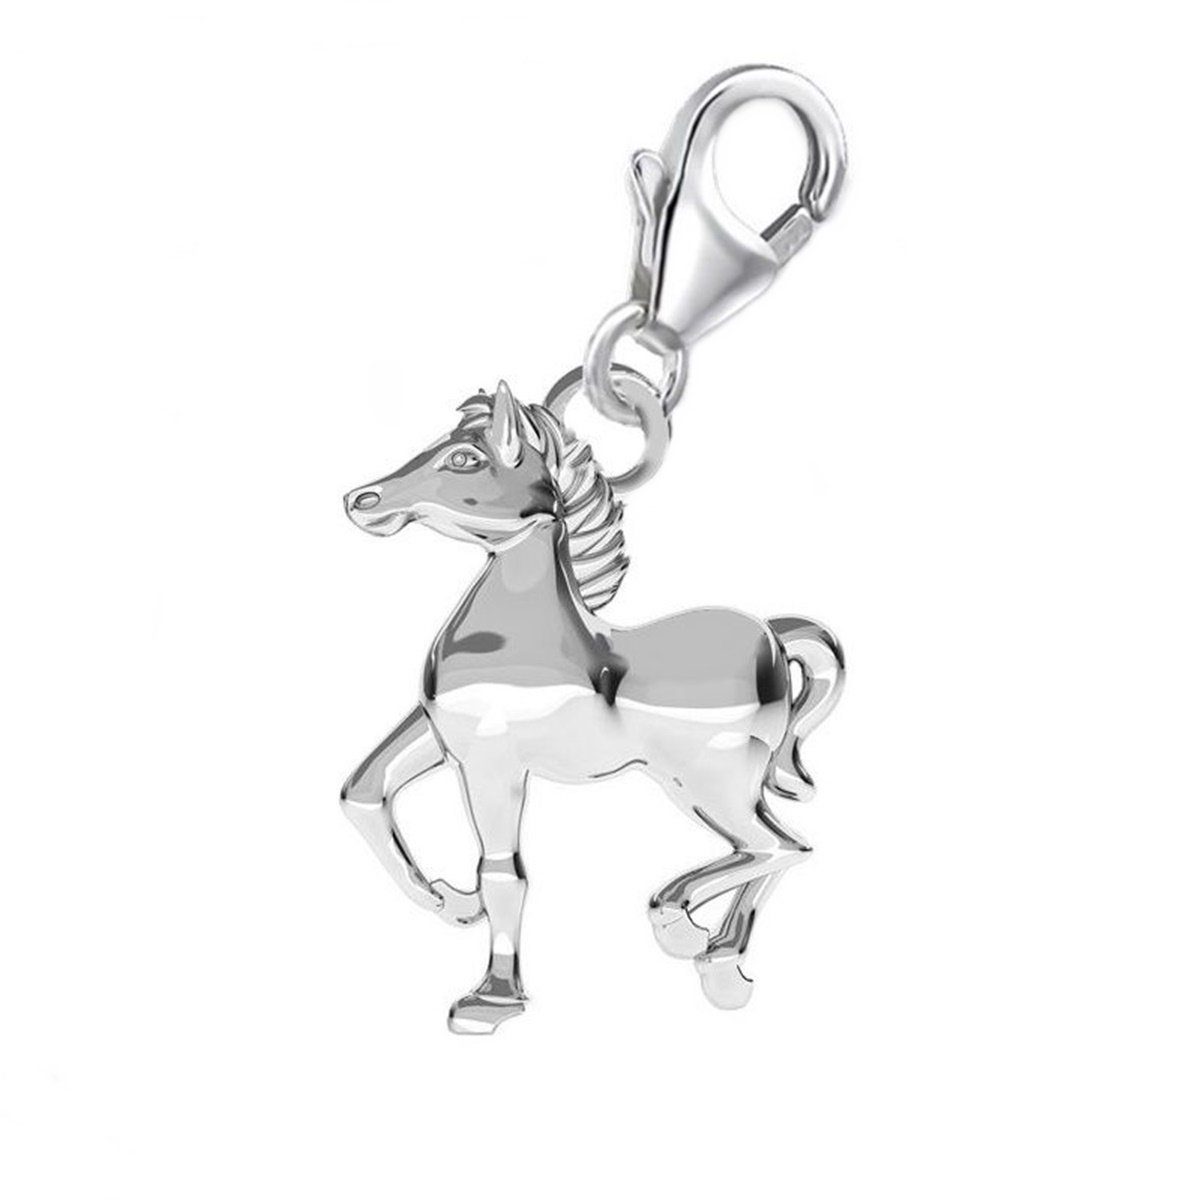 Goldene Hufeisen Charm-Einhänger Pferd Karabiner Charm Anhänger für Bettelarmband 925 Silber (inkl. Etui), für Gliederarmband oder Halskette